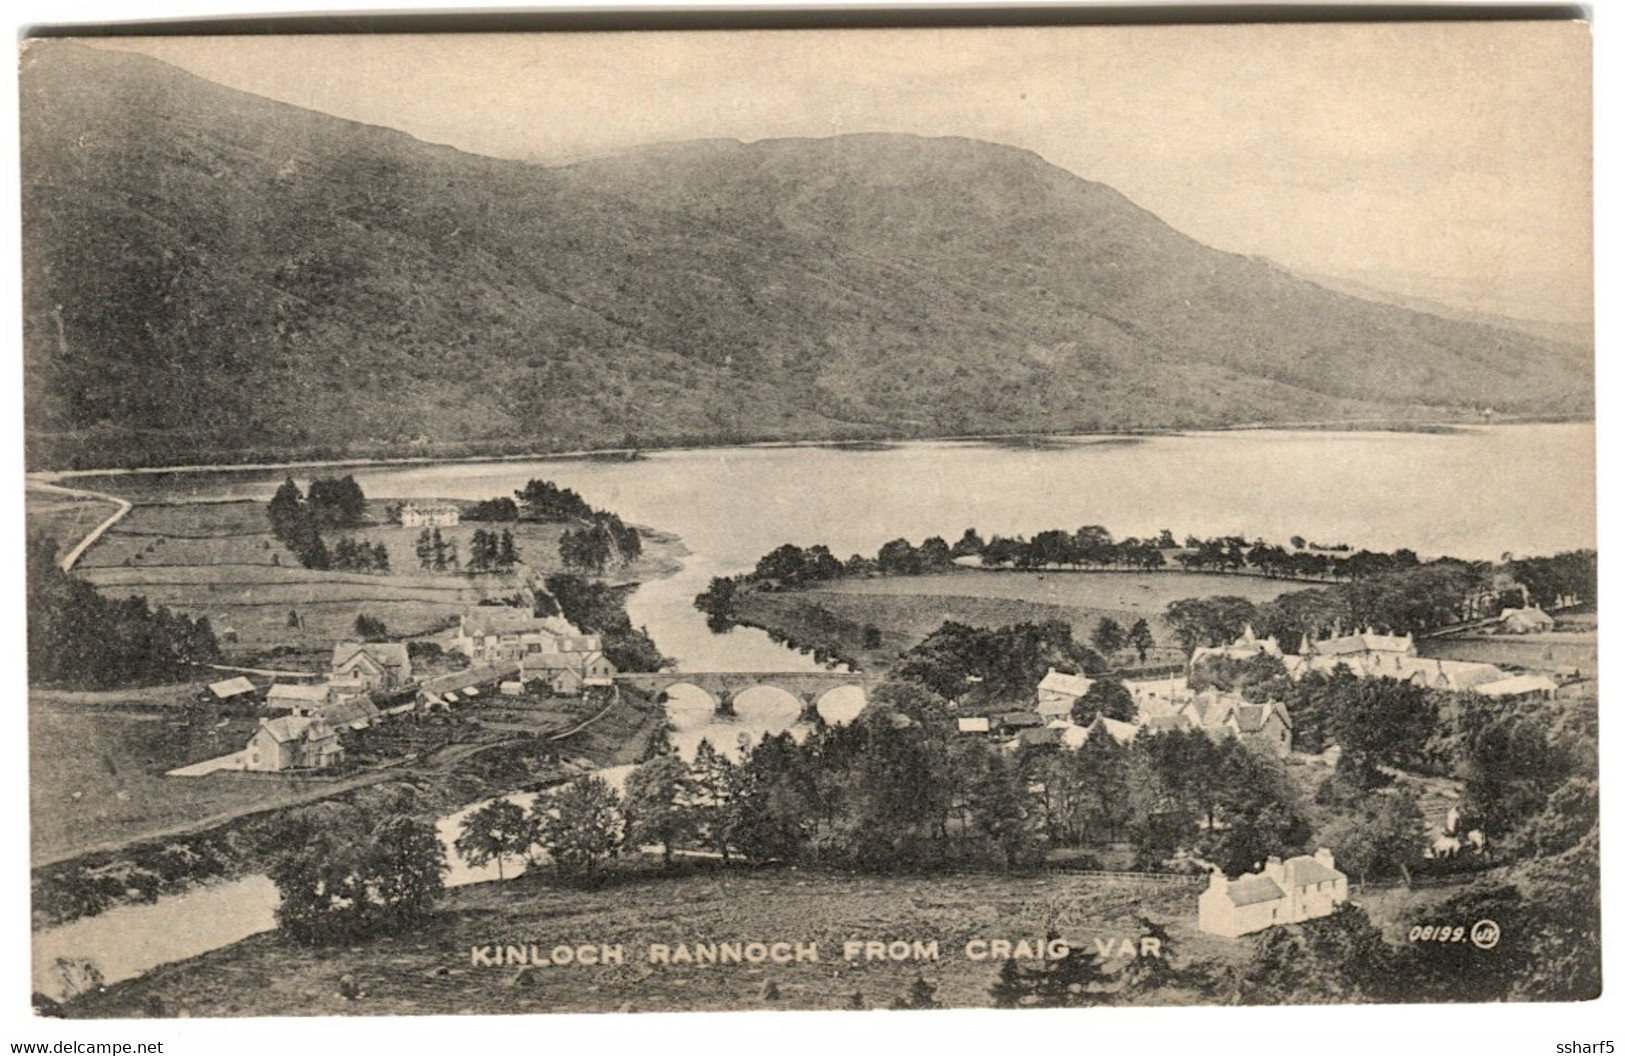 KINLOCH RANNOCH FROM CRAIG VAR C. 19089 - Perthshire